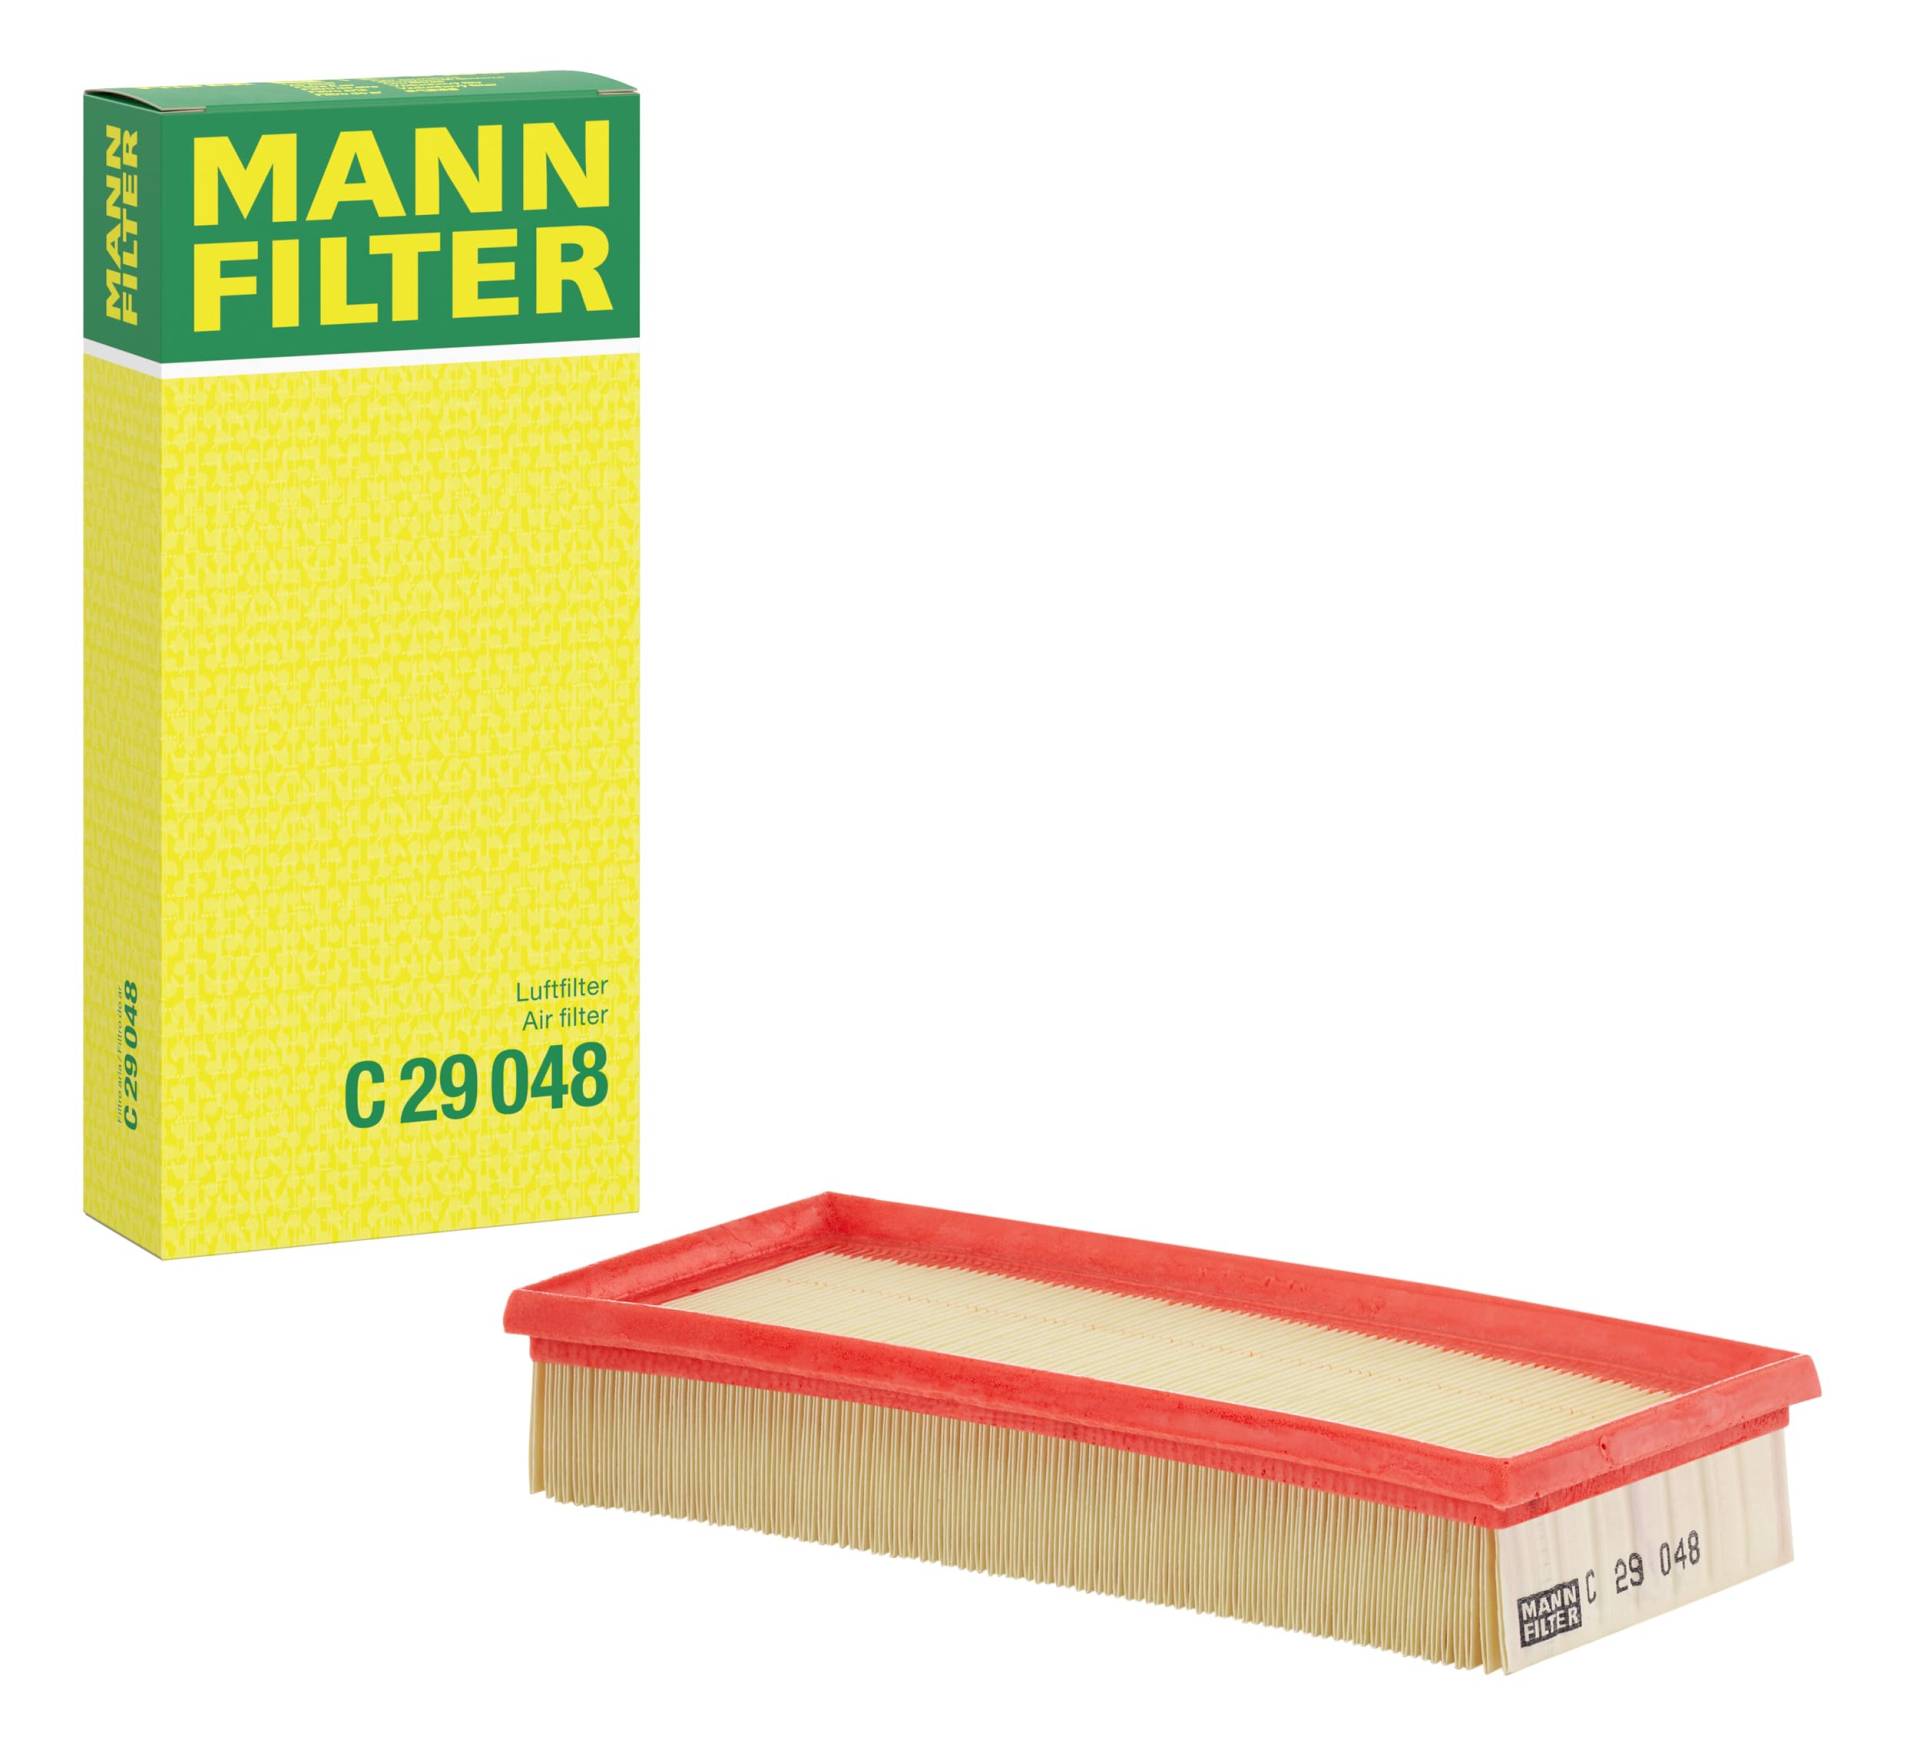 MANN-FILTER LUFTFILTER C 29 048 von MANN-FILTER